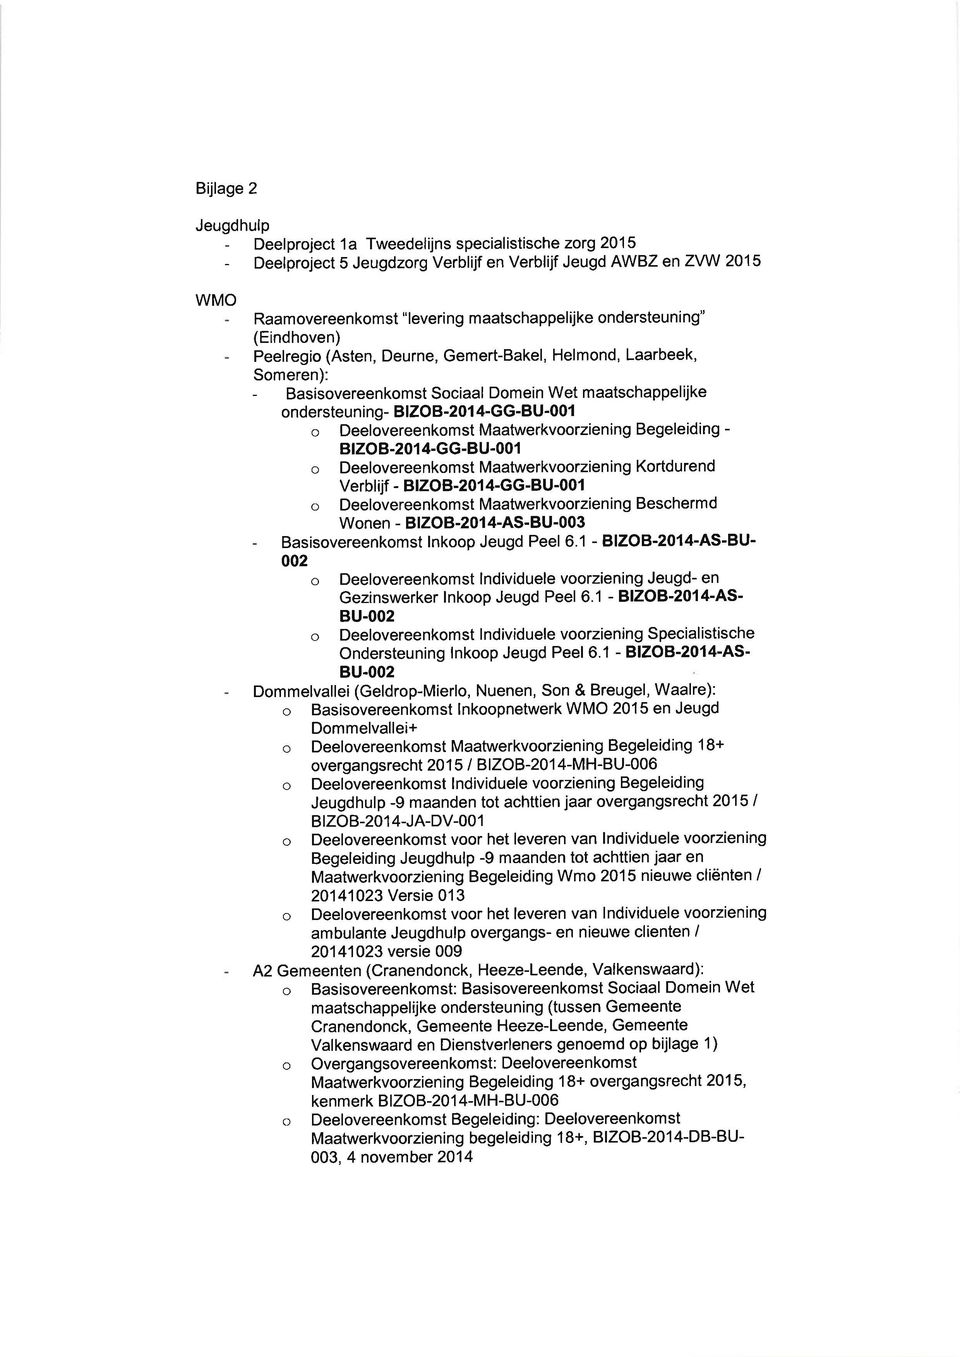 Deelovereenkomst Maatwerkvoorziening Begeleiding - BtzoB.